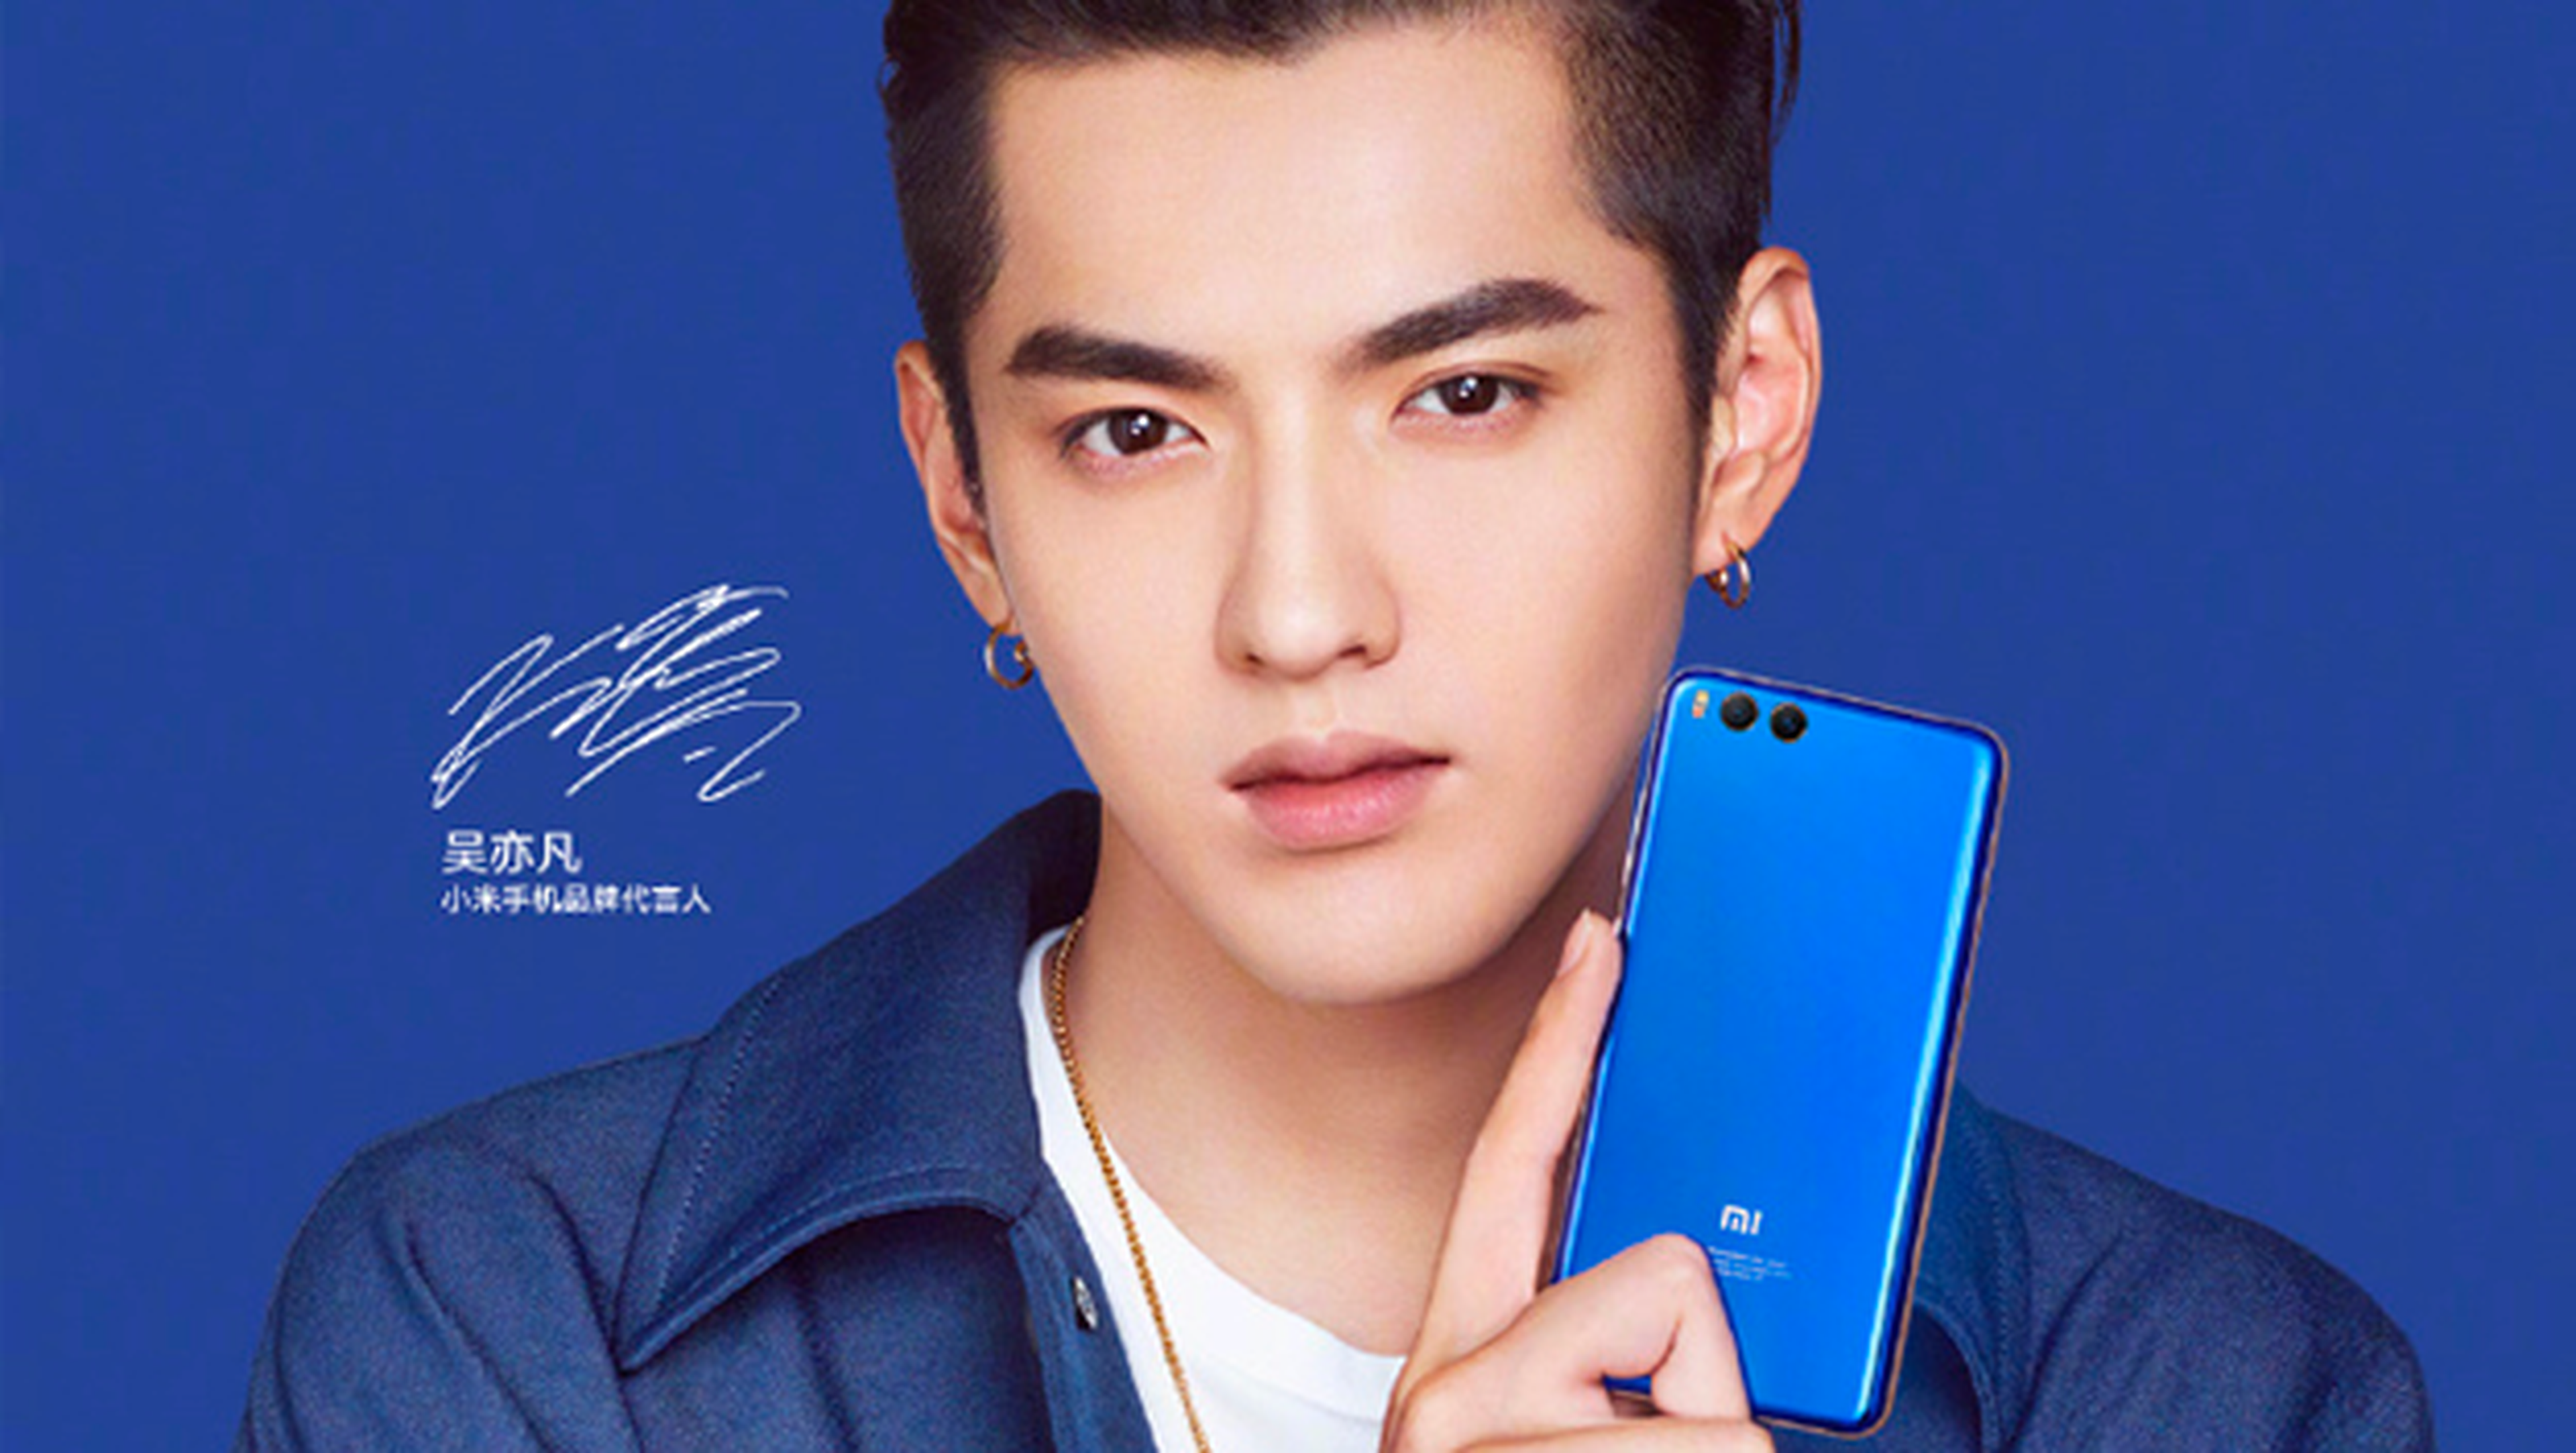 Reconocimiento facial Xiaomi Mi Note 3 y Xiaomi Mi Mix 2